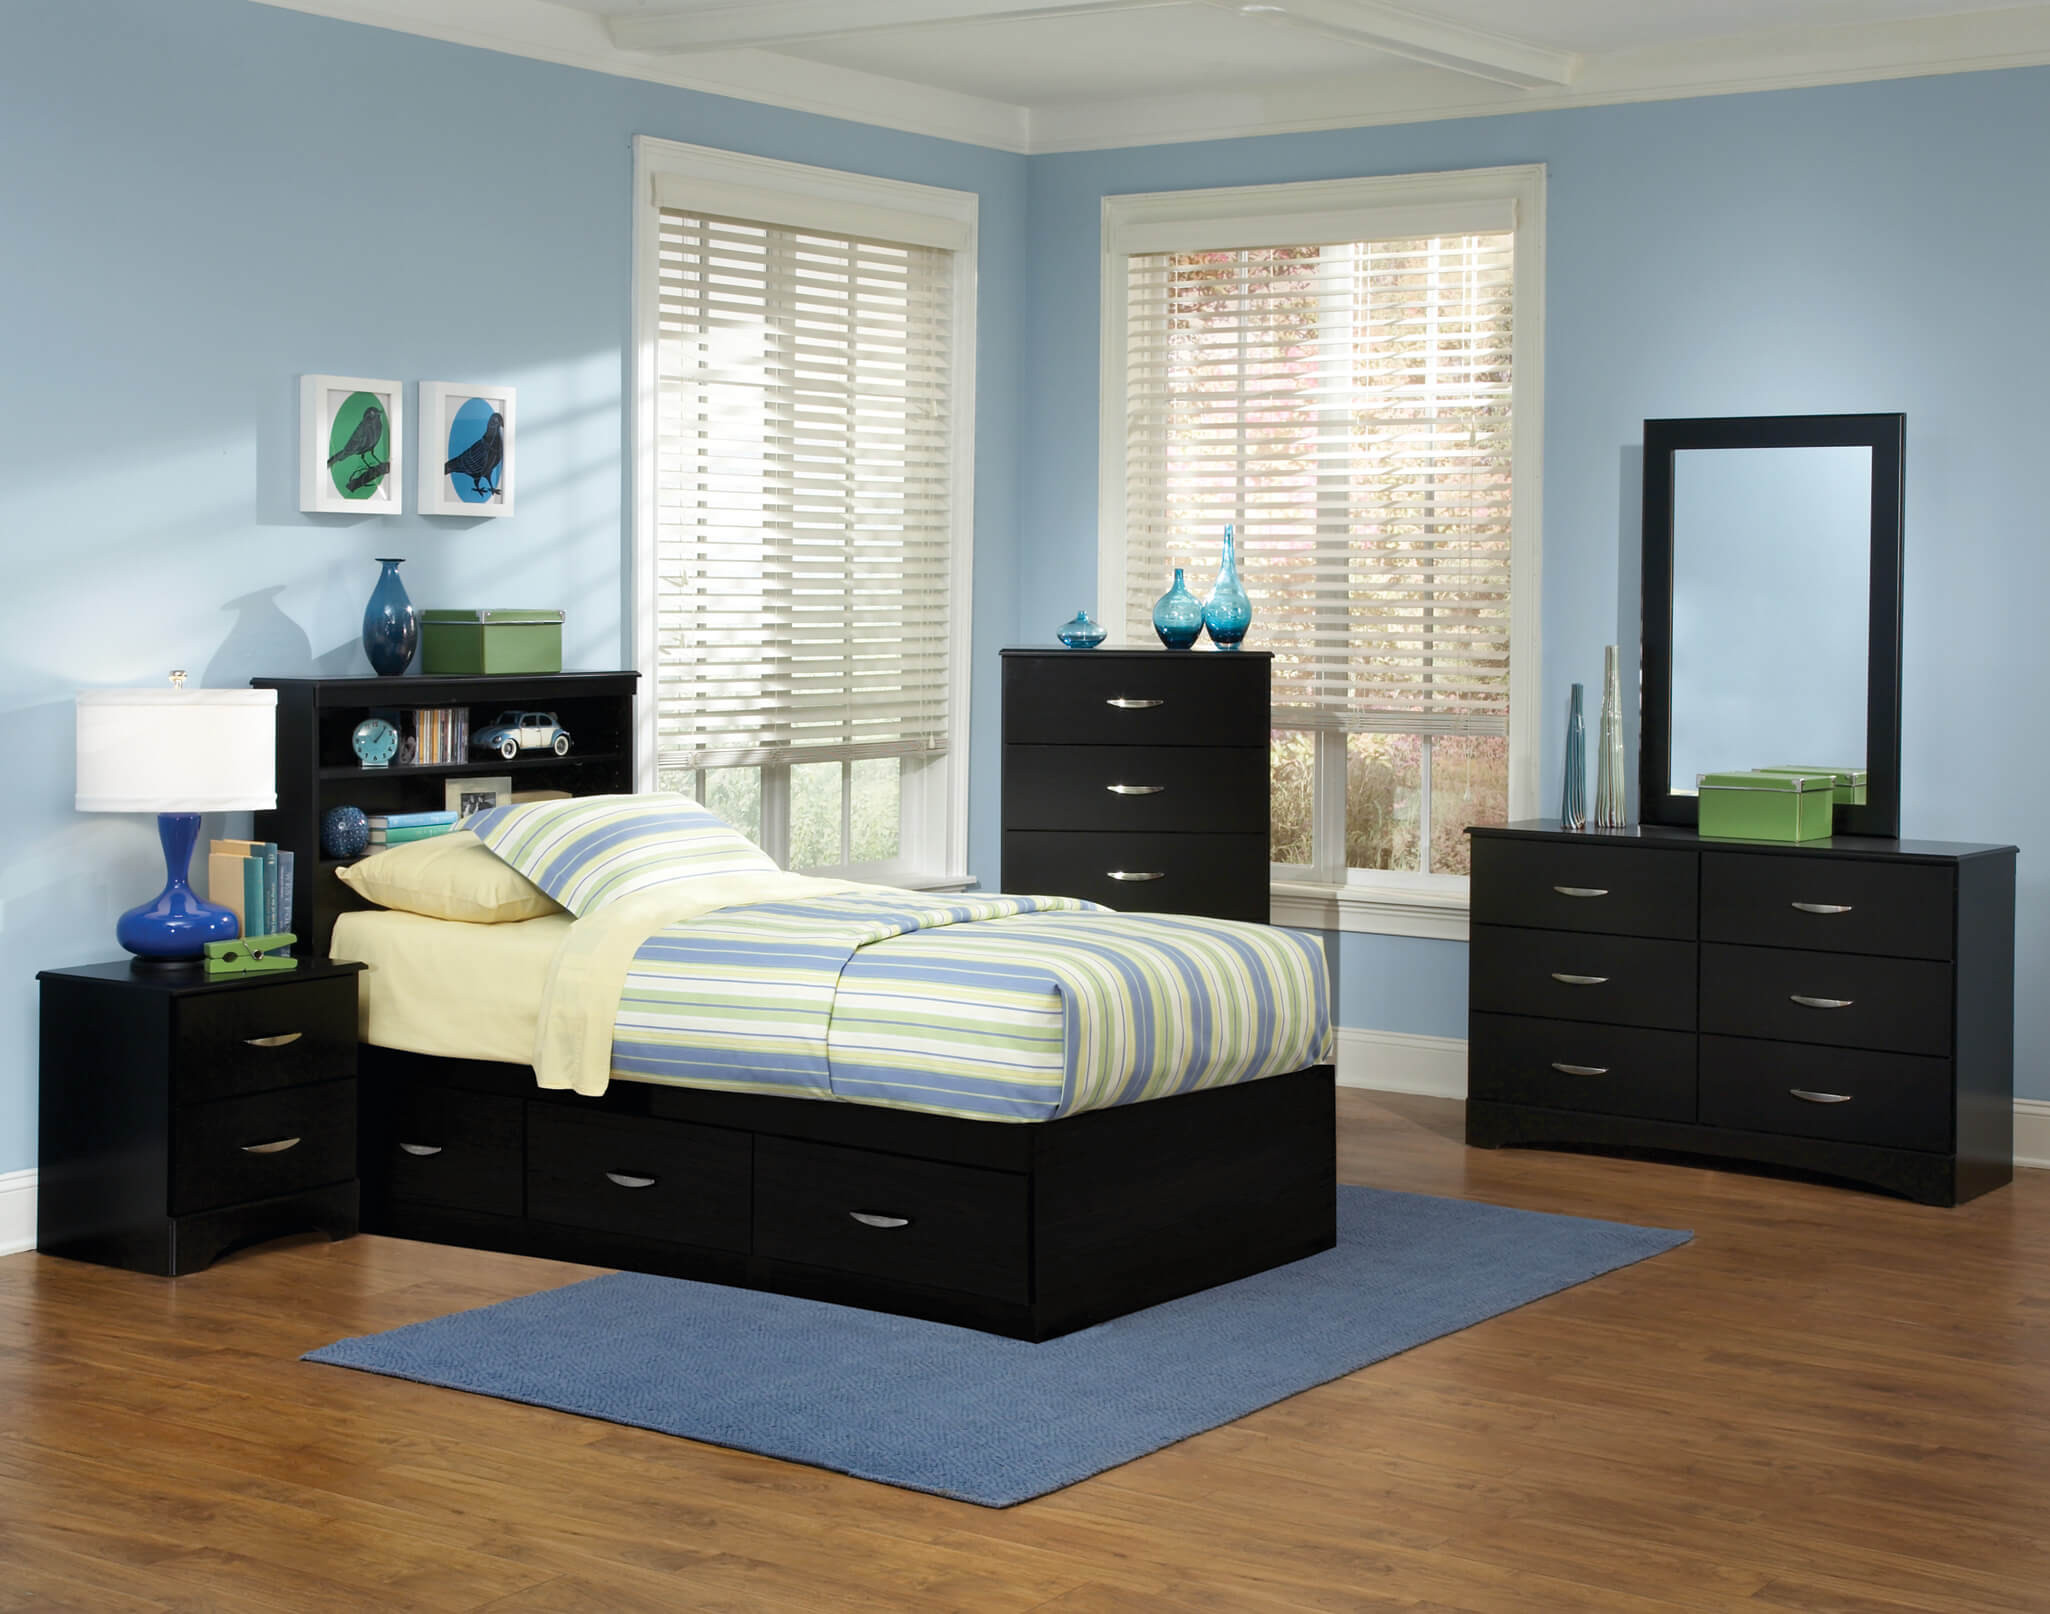 Bedroom Sets For Kids
 Jacob Twin Black Storage Bedroom Set